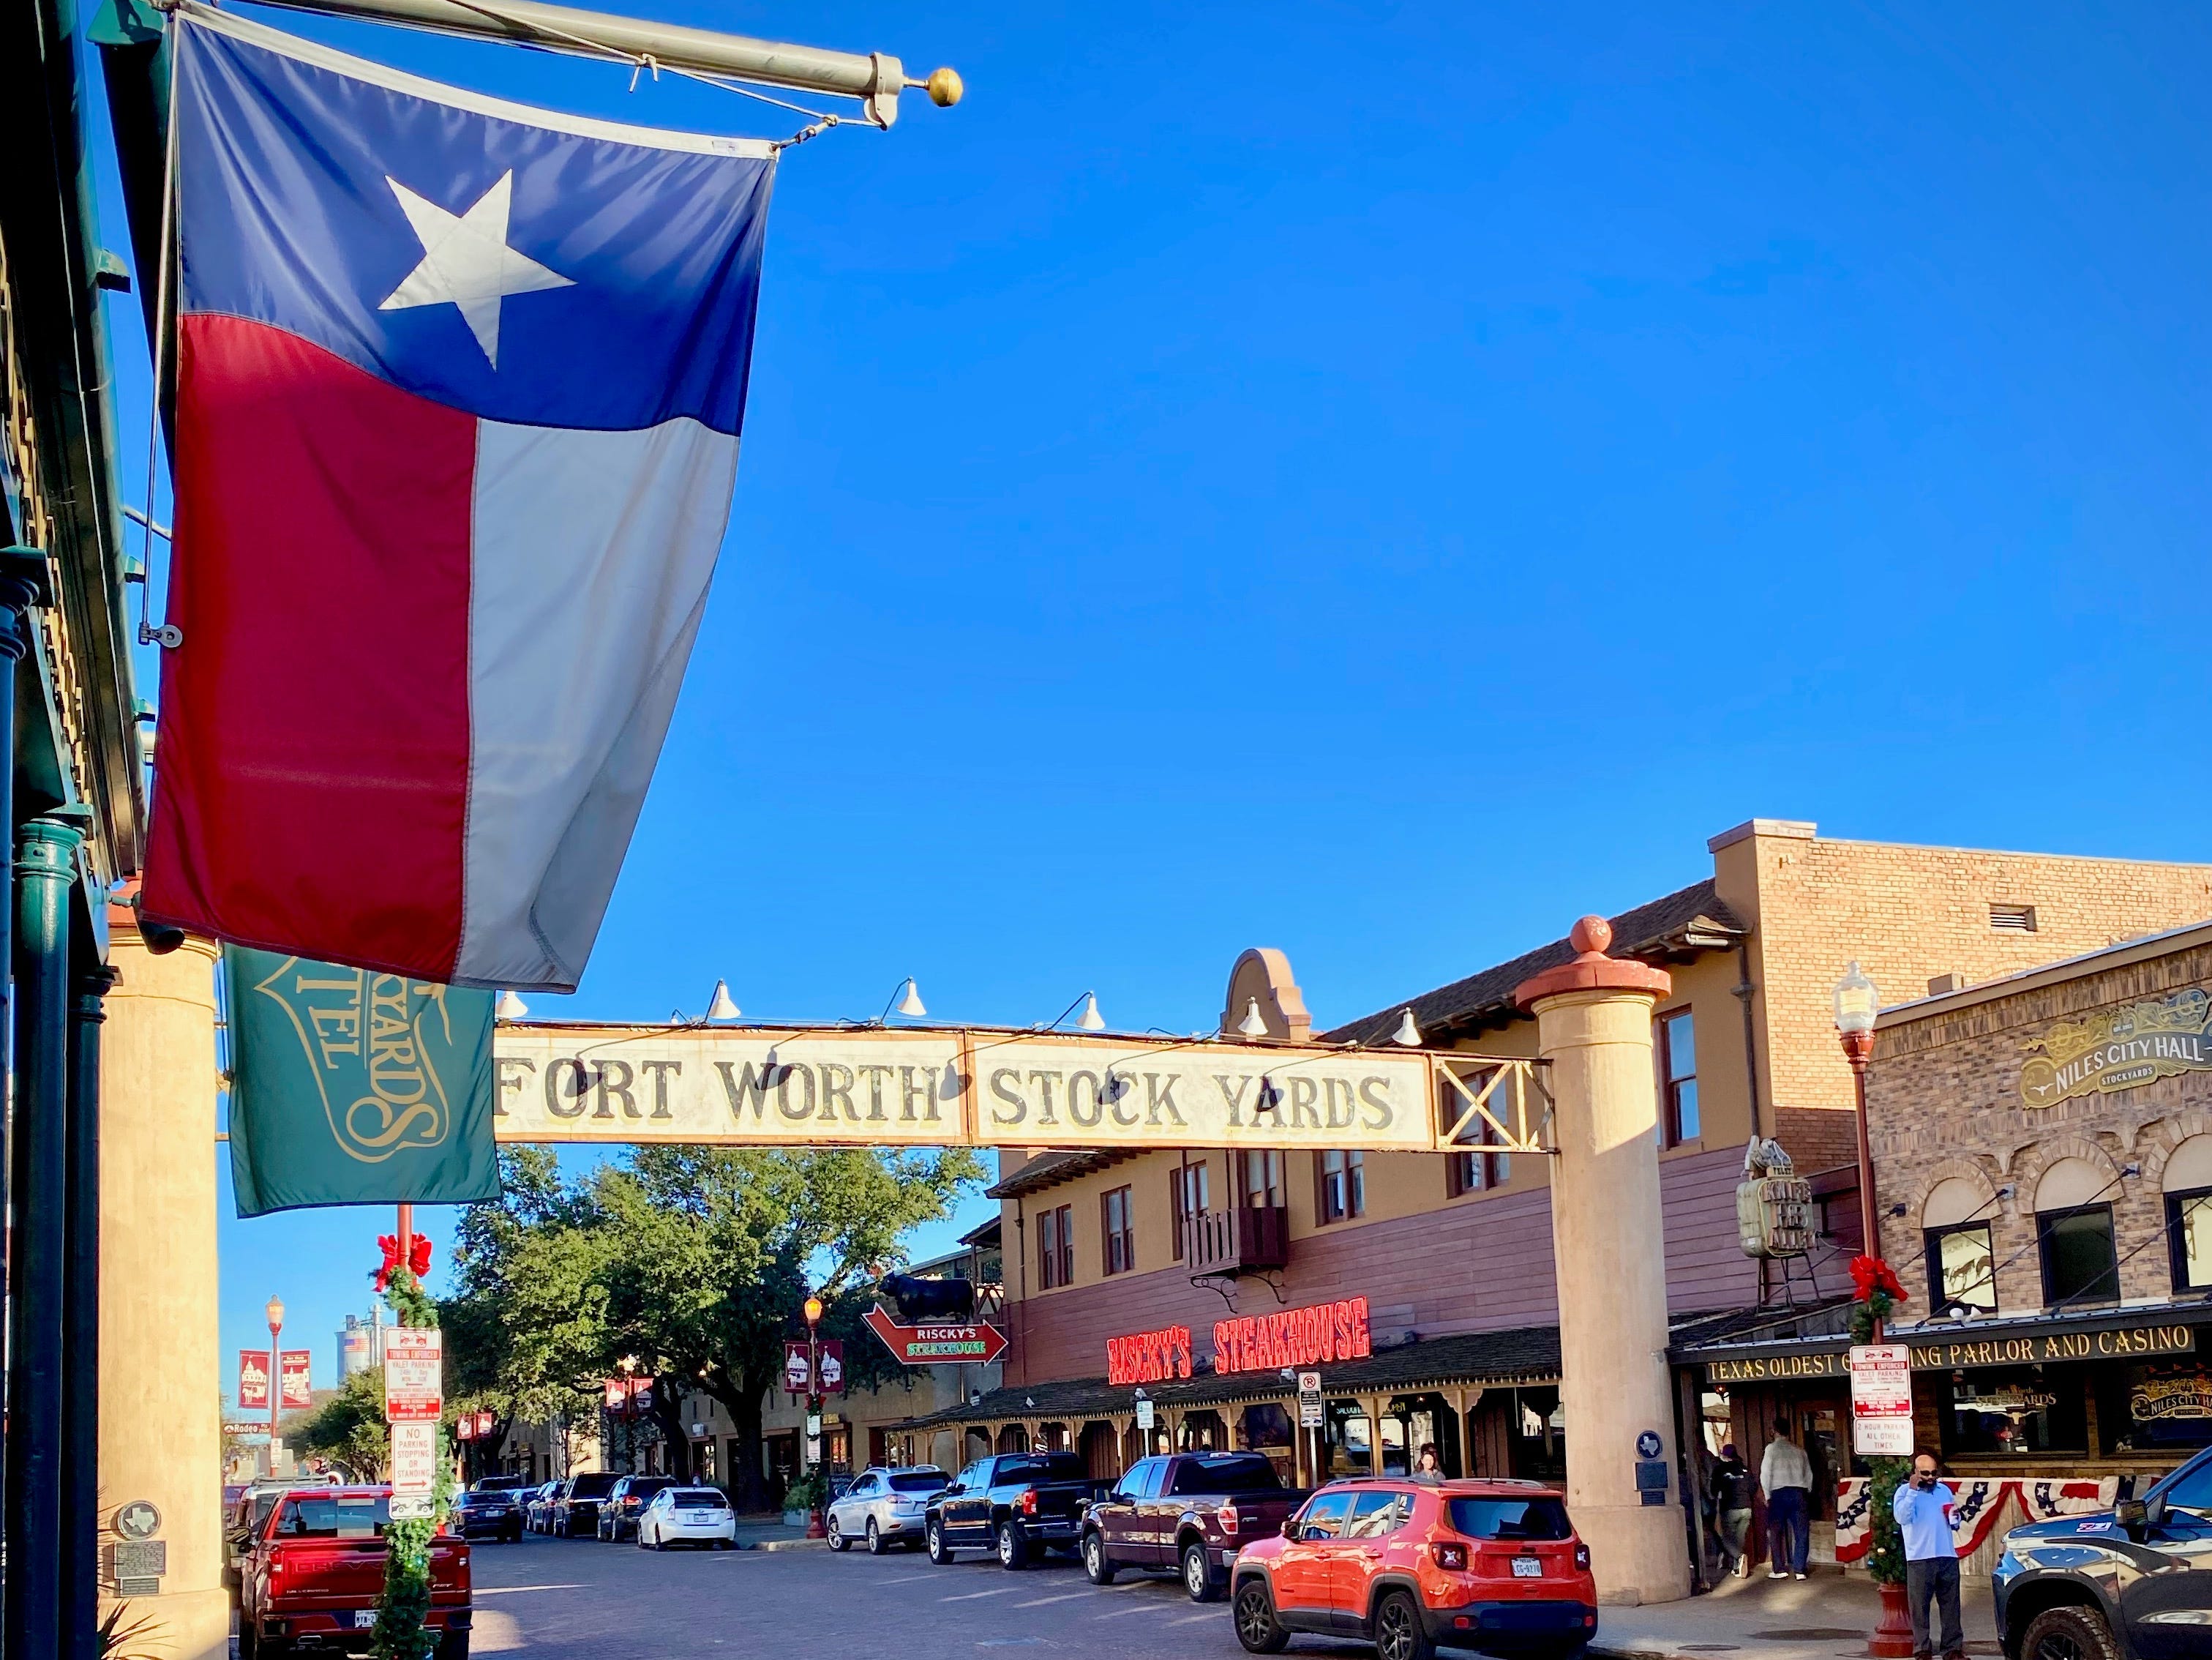 Die texanische Flagge hängt an einem Geschäft auf einer gepflasterten Straße, die von Geschäften gesäumt ist.